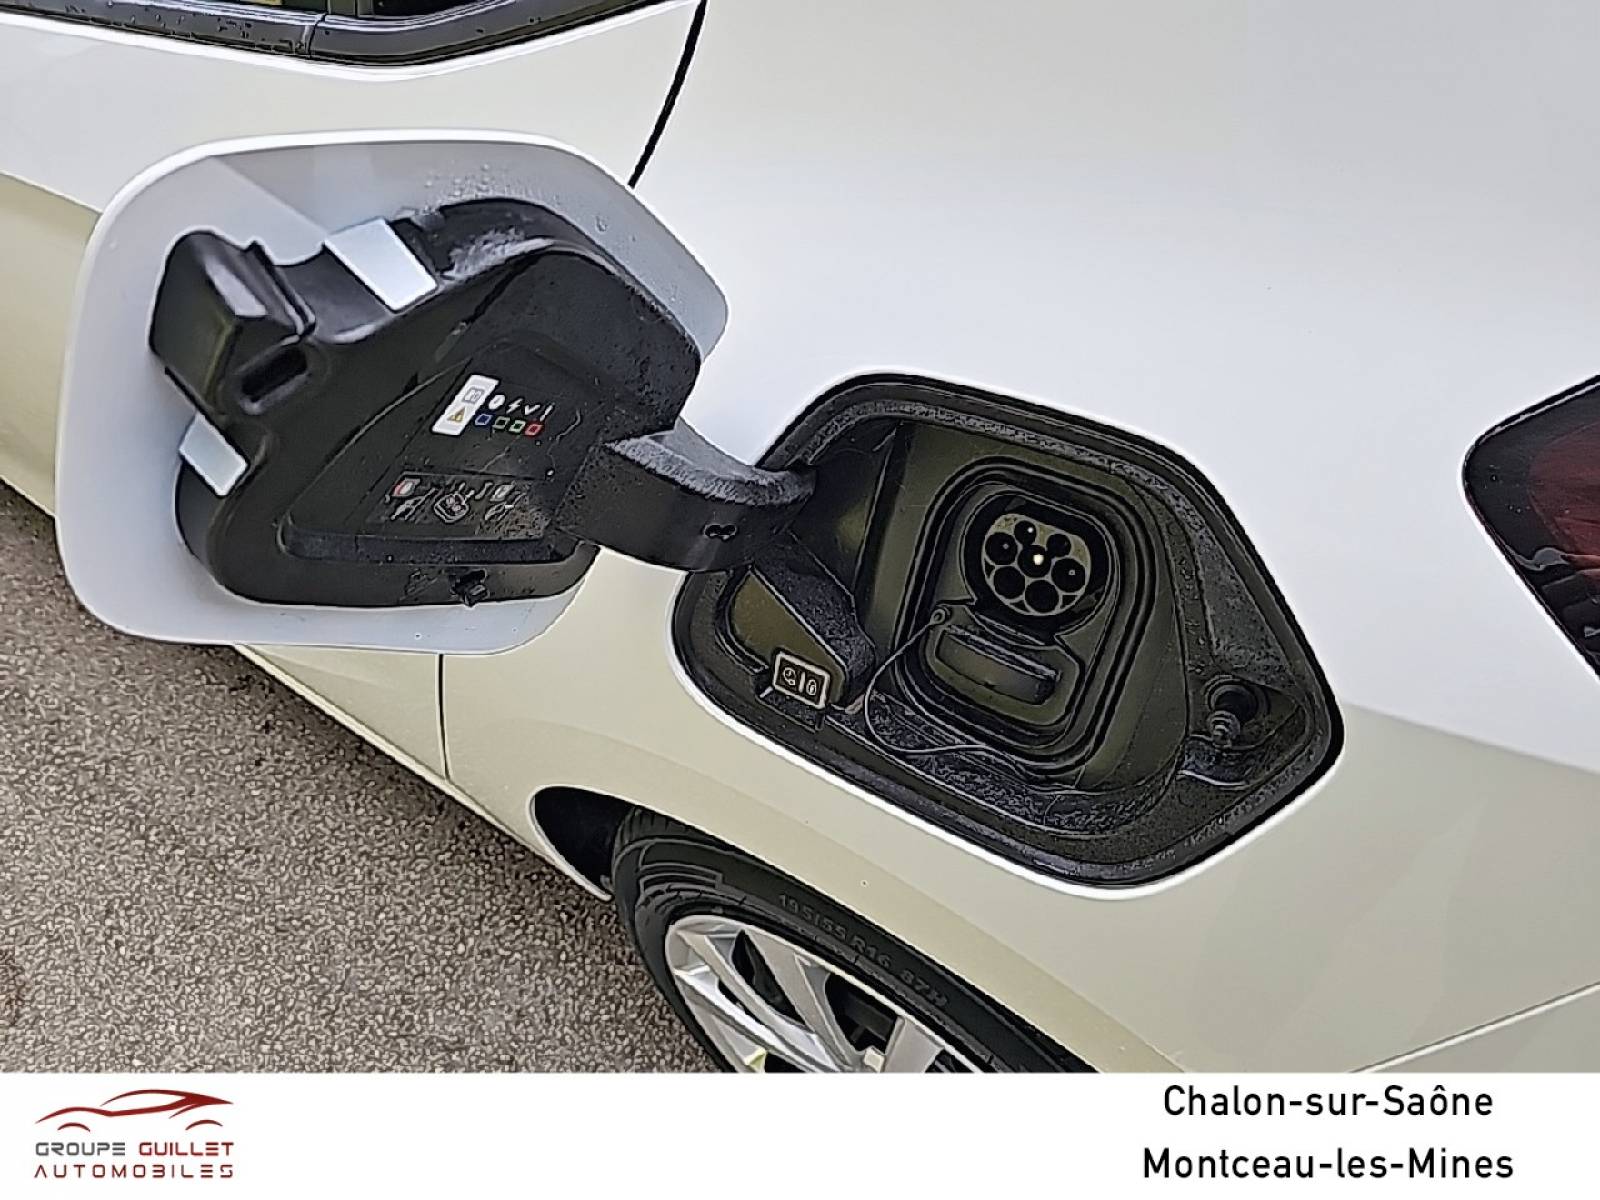 OPEL Corsa Electrique 136 ch & Batterie 50 kWh - véhicule d'occasion - Groupe Guillet - Opel Magicauto Chalon - 71380 - Saint-Marcel - 12